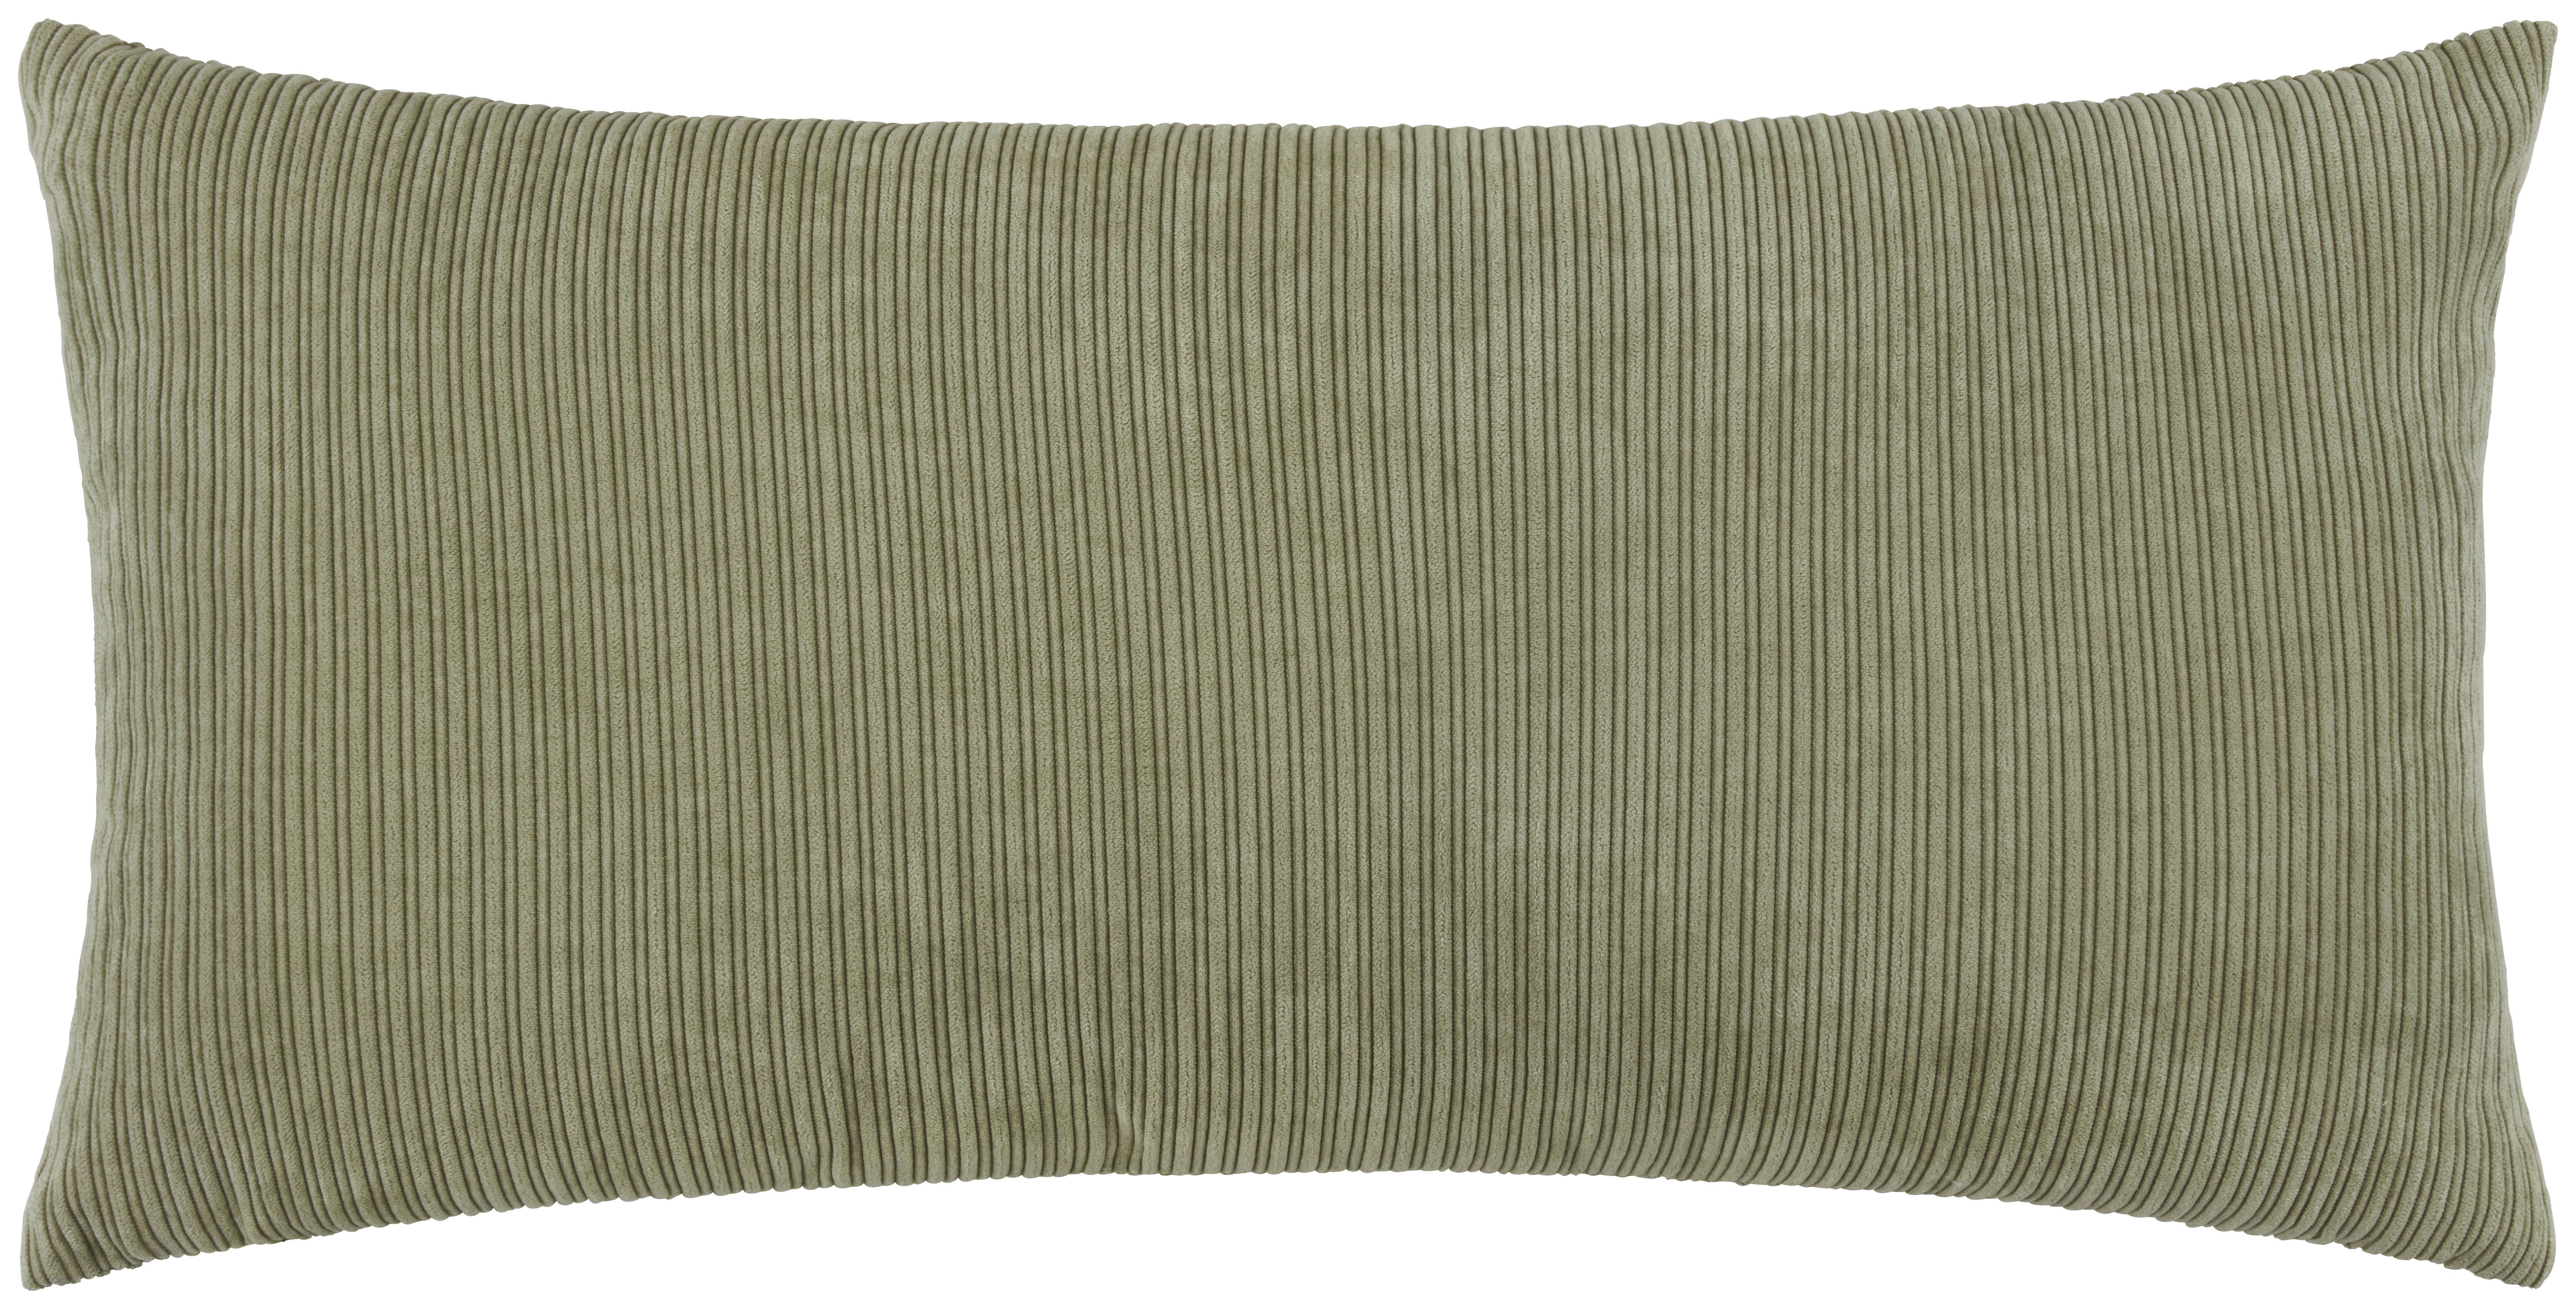 Dekorační Polštář Corinna, 30/60cm, Zelená - zelená, Moderní, textil (30/60cm) - Premium Living